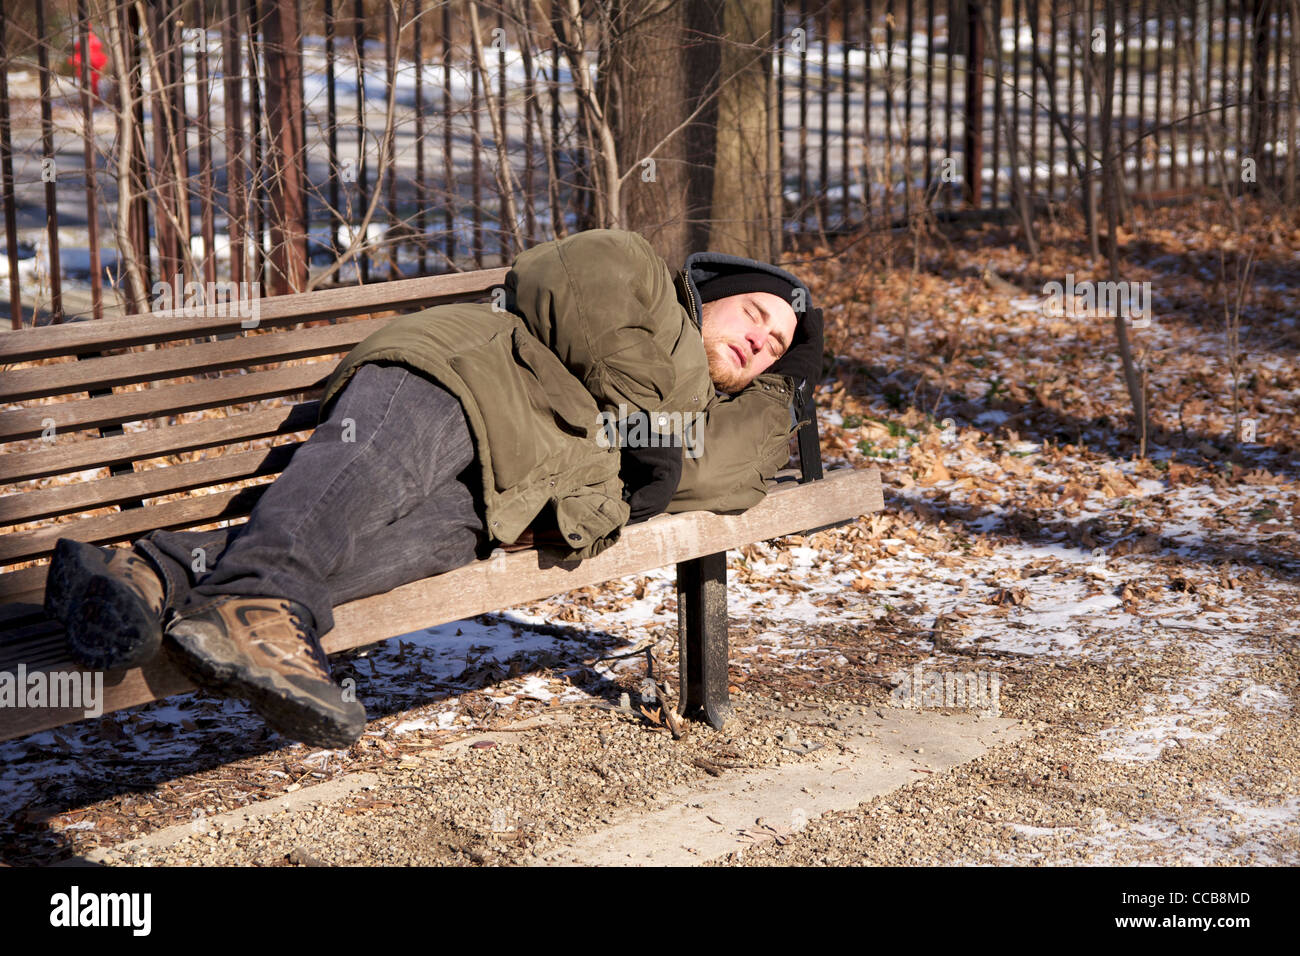 Image result for homeless man